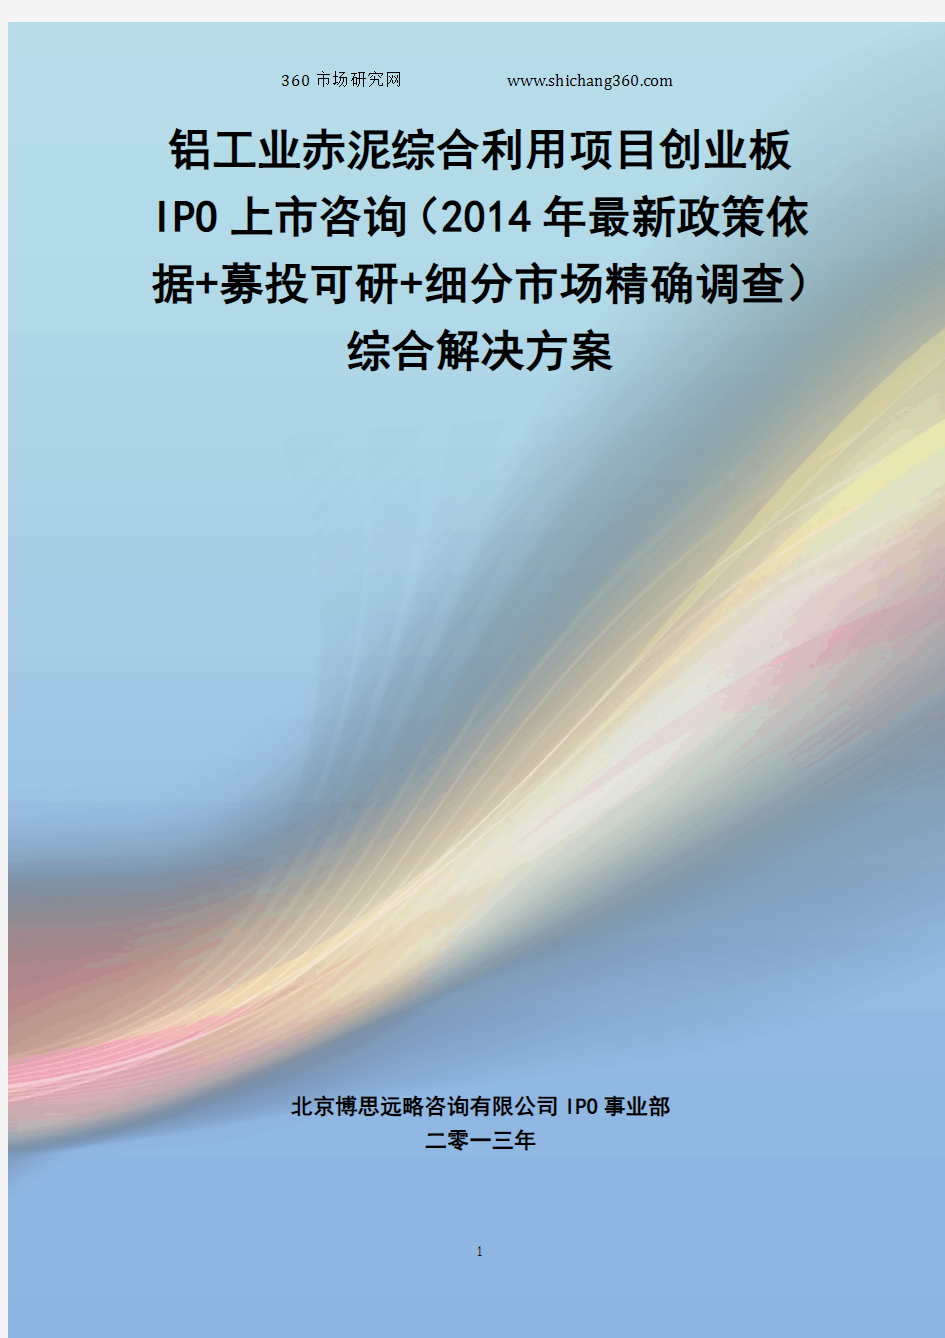 铝工业赤泥综合利用IPO上市咨询(2014年最新政策+募投可研+细分市场调查)综合解决方案